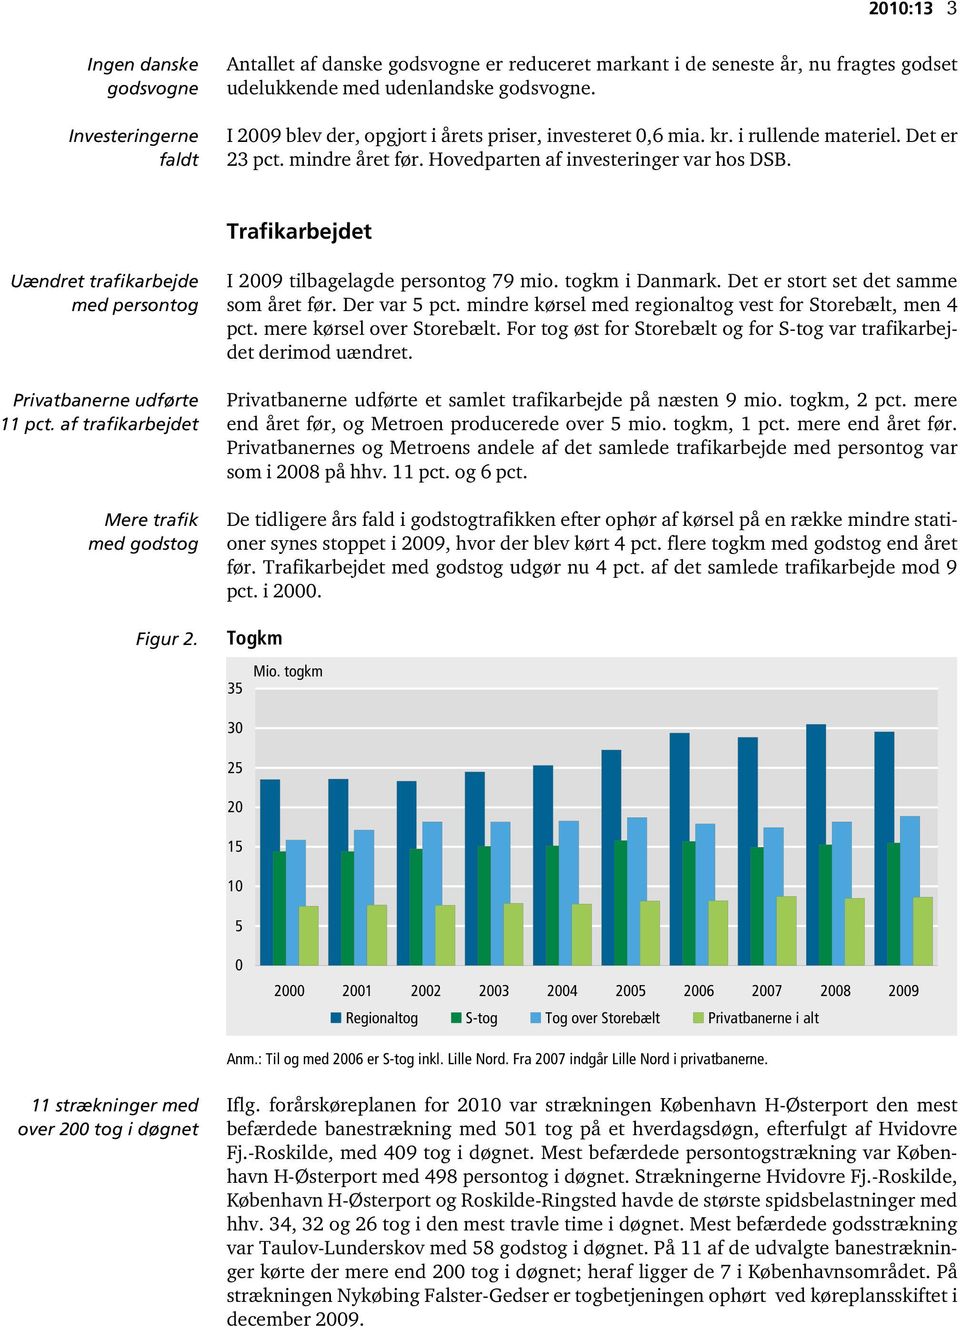 Trafikarbejdet Uændret trafikarbejde med persontog Privatbanerne udførte 11 pct. af trafikarbejdet Mere trafik med godstog Figur 2. I 2009 tilbagelagde persontog 79 mio. togkm i Danmark.